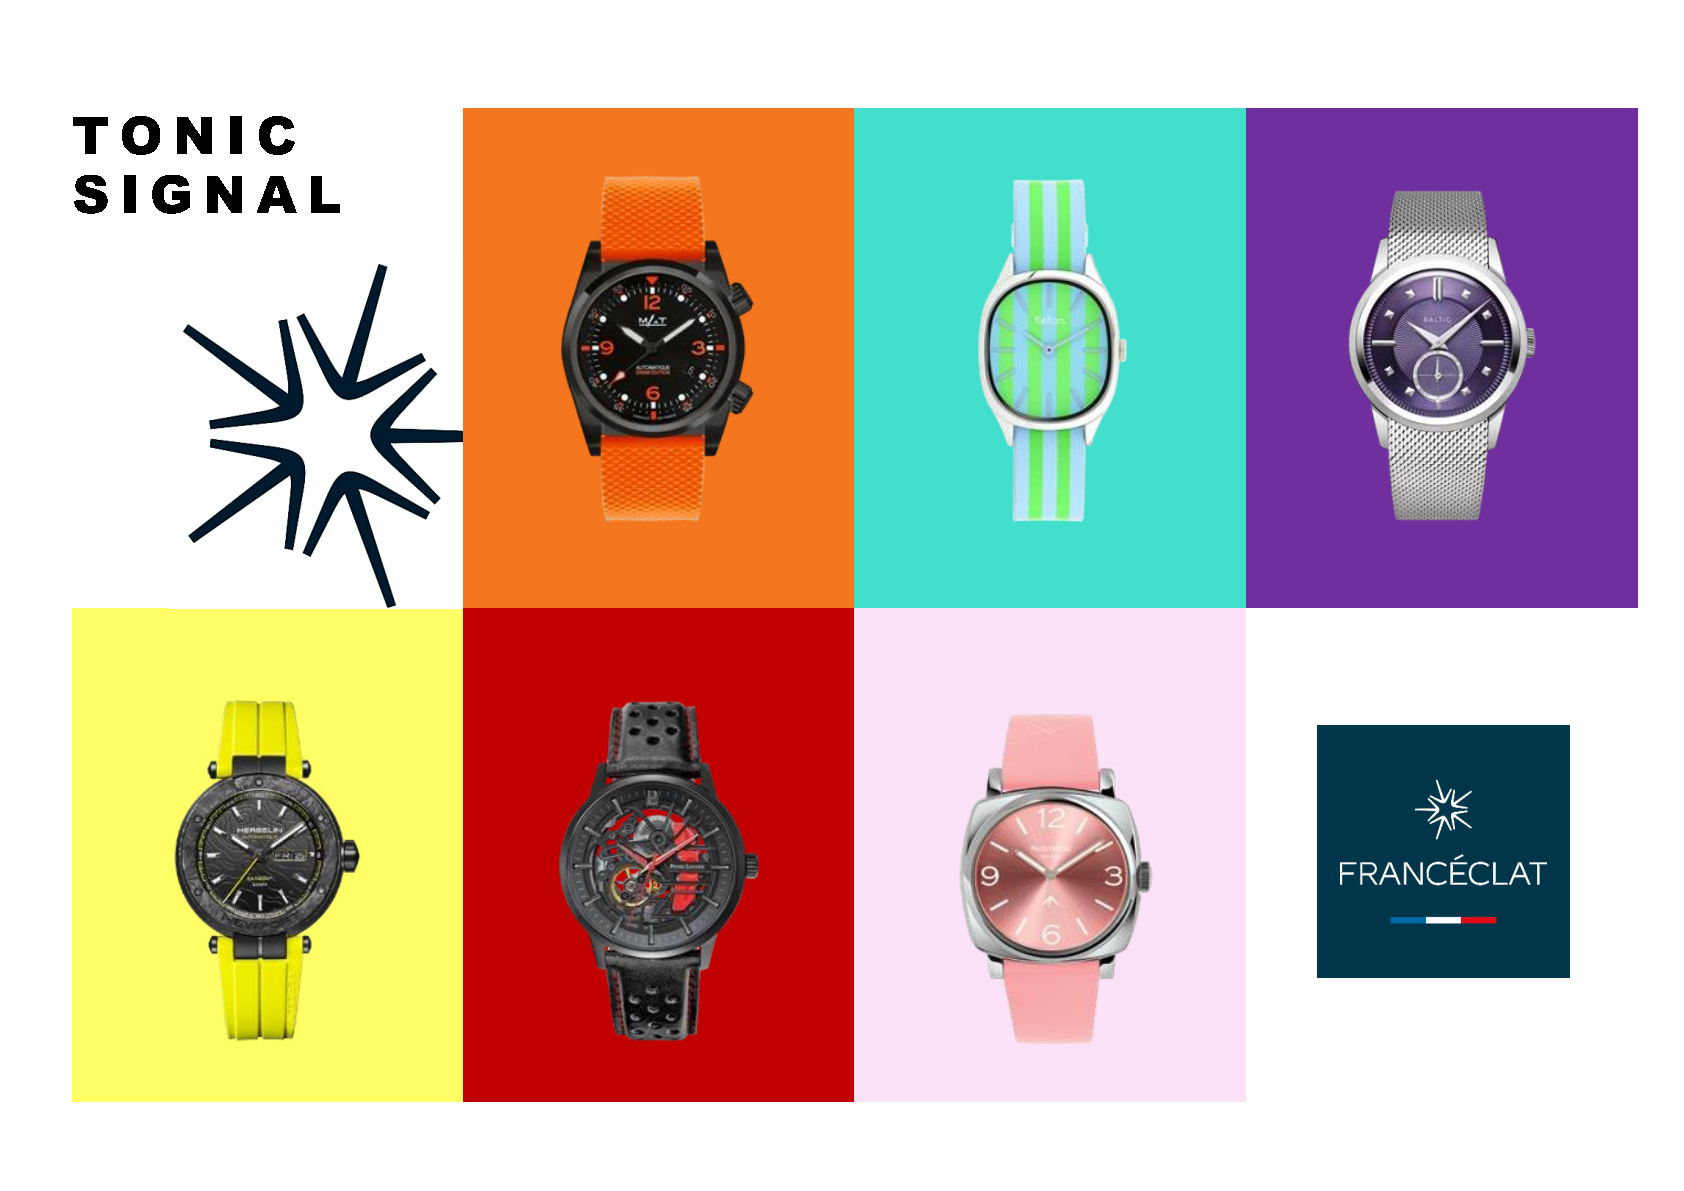 フランス時計・宝飾・テーブルウェアの業界団体
FRANCECLAT(フランセクラ)、
フレンチウォッチの魅力を集めたコレクション
「TONIC SIGNAL」を発表！